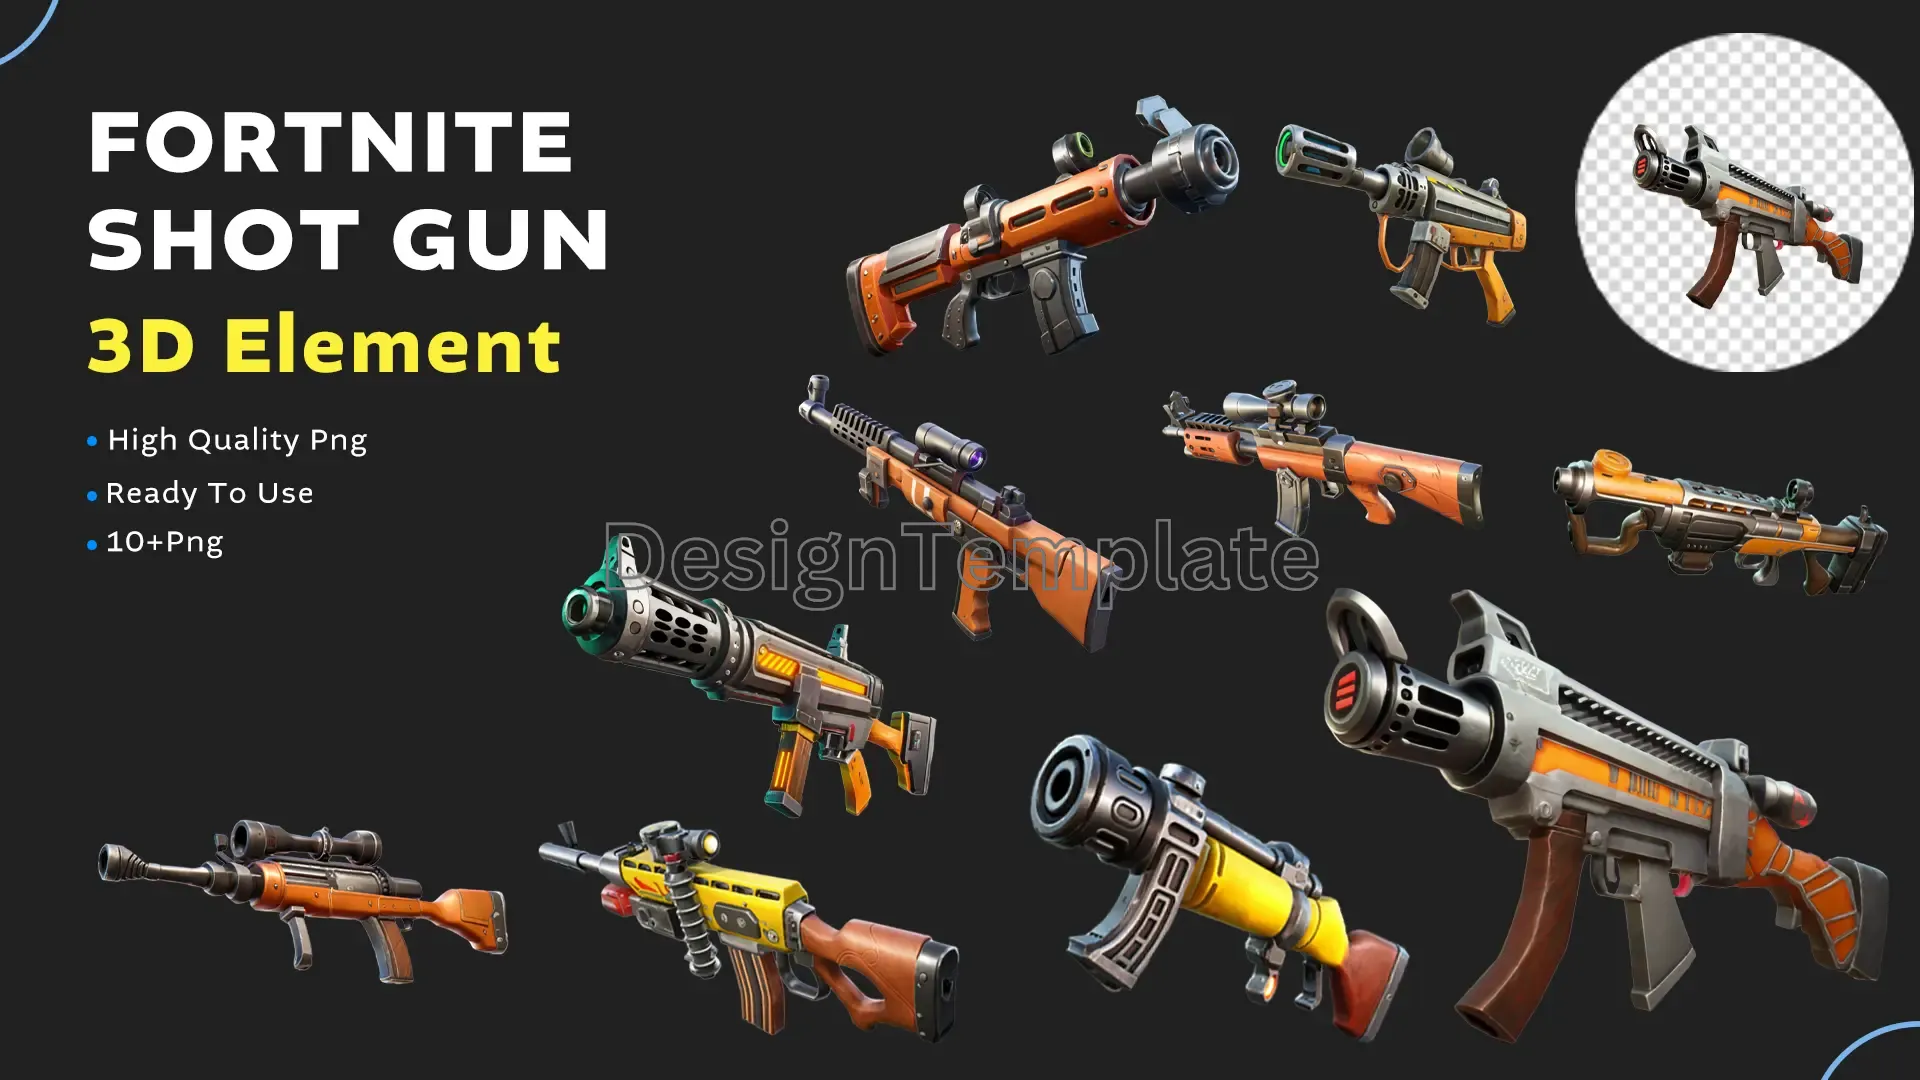 Battle Royale Arsenal Fortnite Shot Gun 3D Elements Pack image